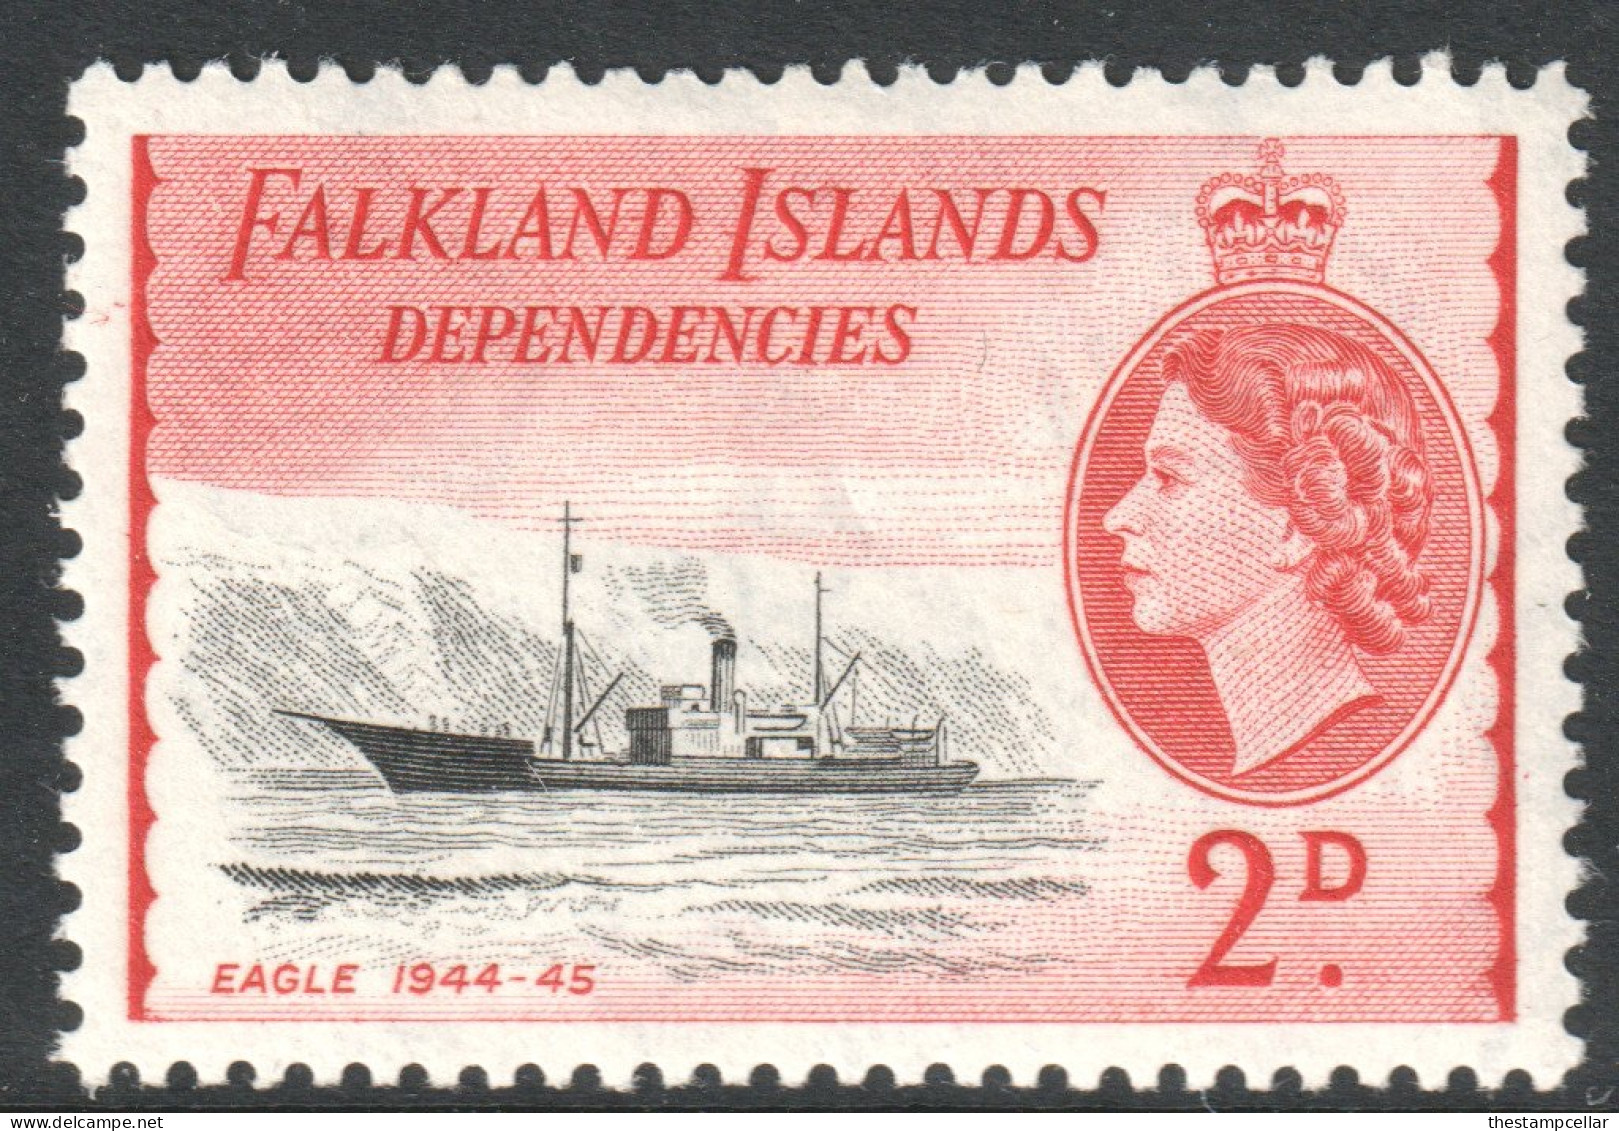 Falkland Islands Dependencies Scott 1L22 - SG G29, 1954 Elizabeth II 2d MH* - Falkland Islands